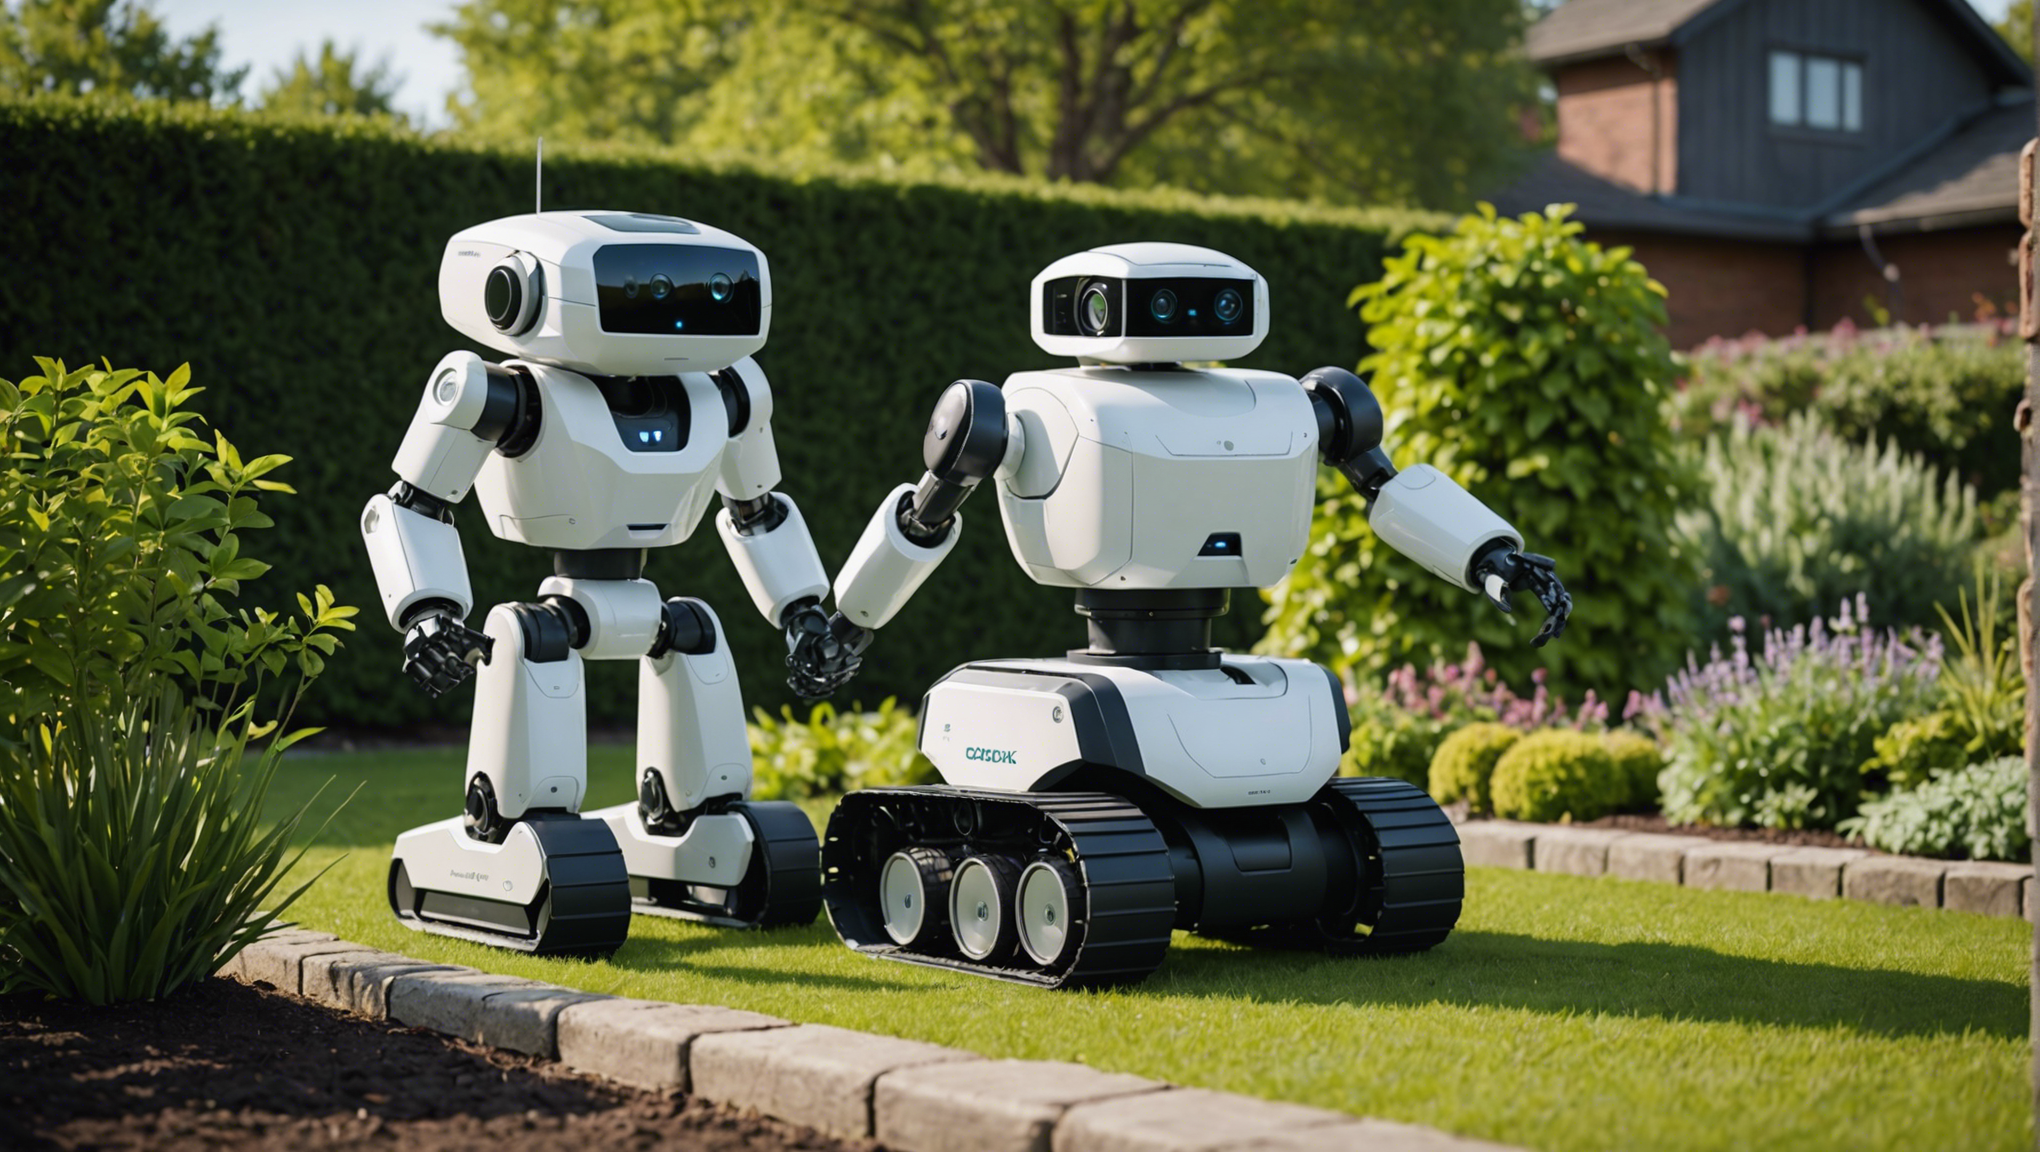 besoin de main-d'œuvre efficace pour votre jardin dans le gard? optez pour la location de robot jardinier et profitez d'une solution innovante et pratique pour l'entretien de votre espace extérieur.